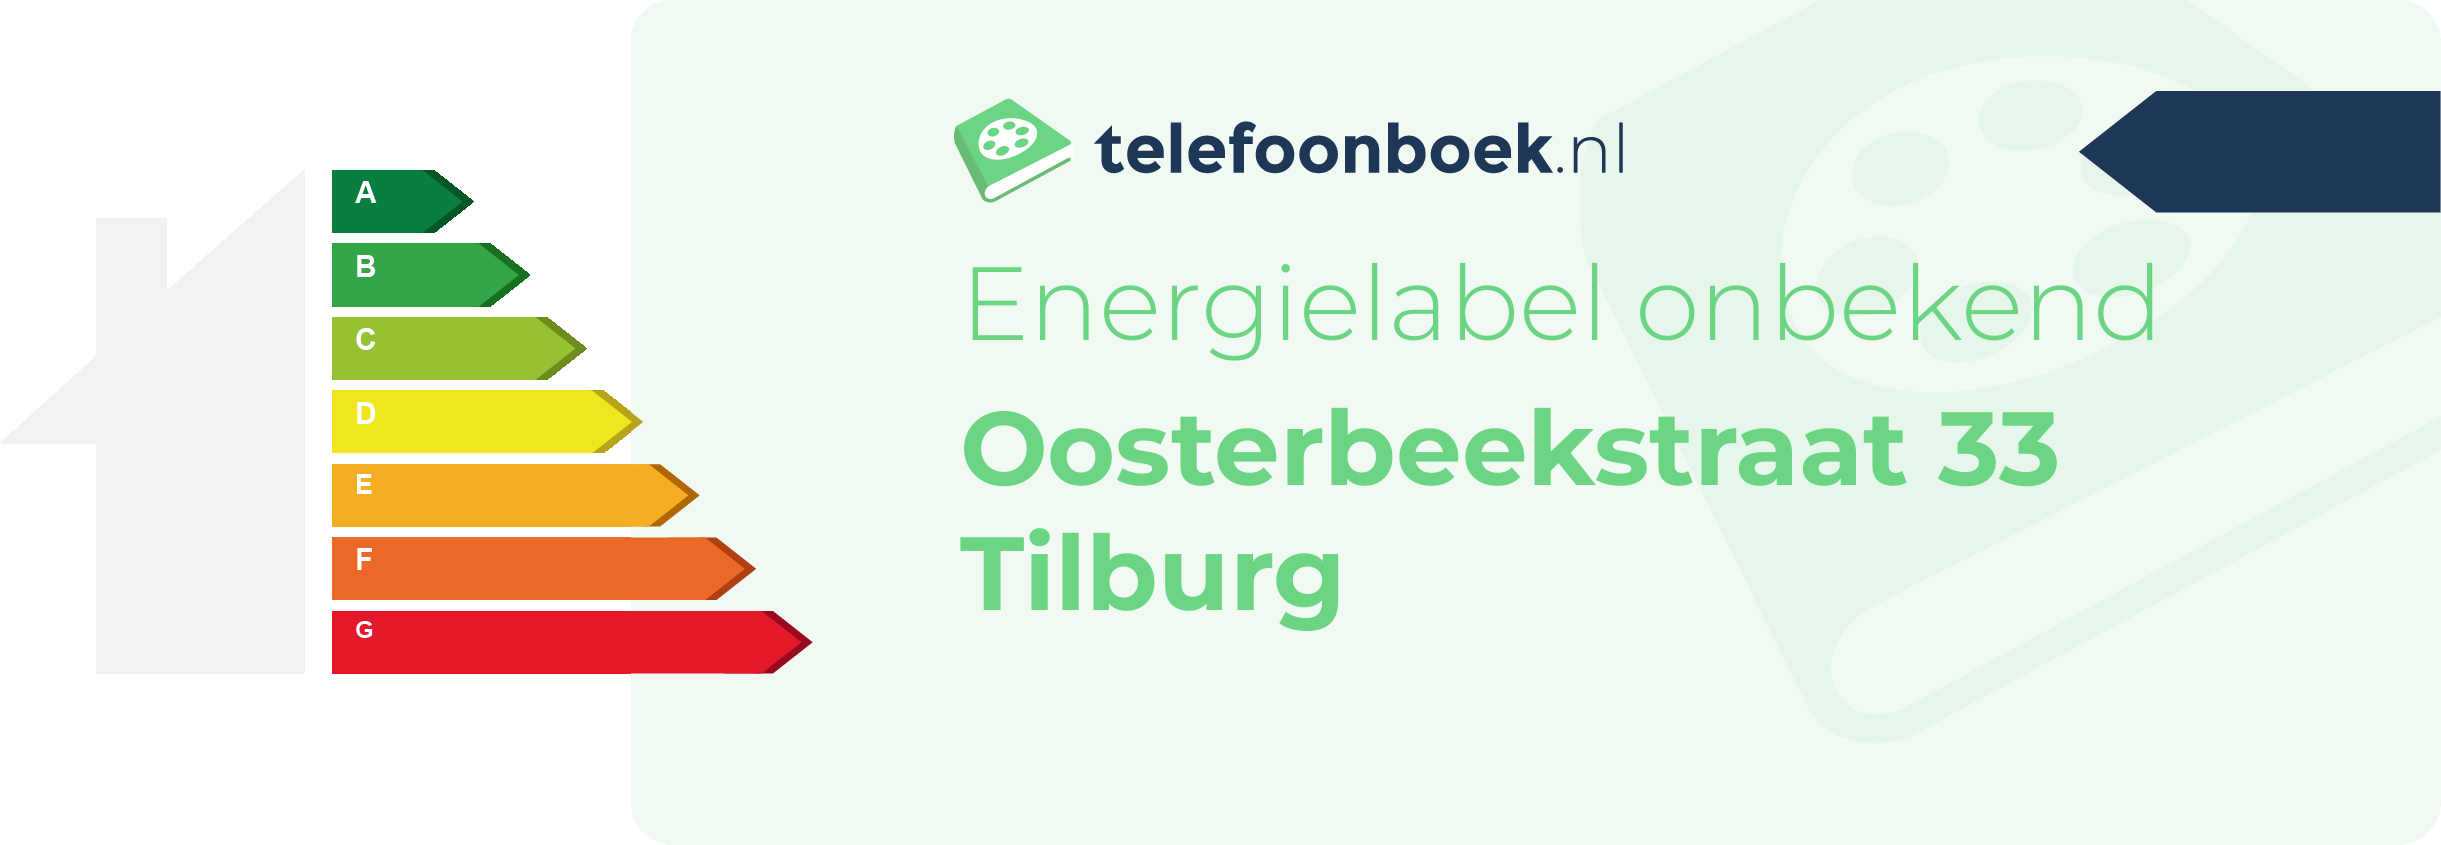 Energielabel Oosterbeekstraat 33 Tilburg